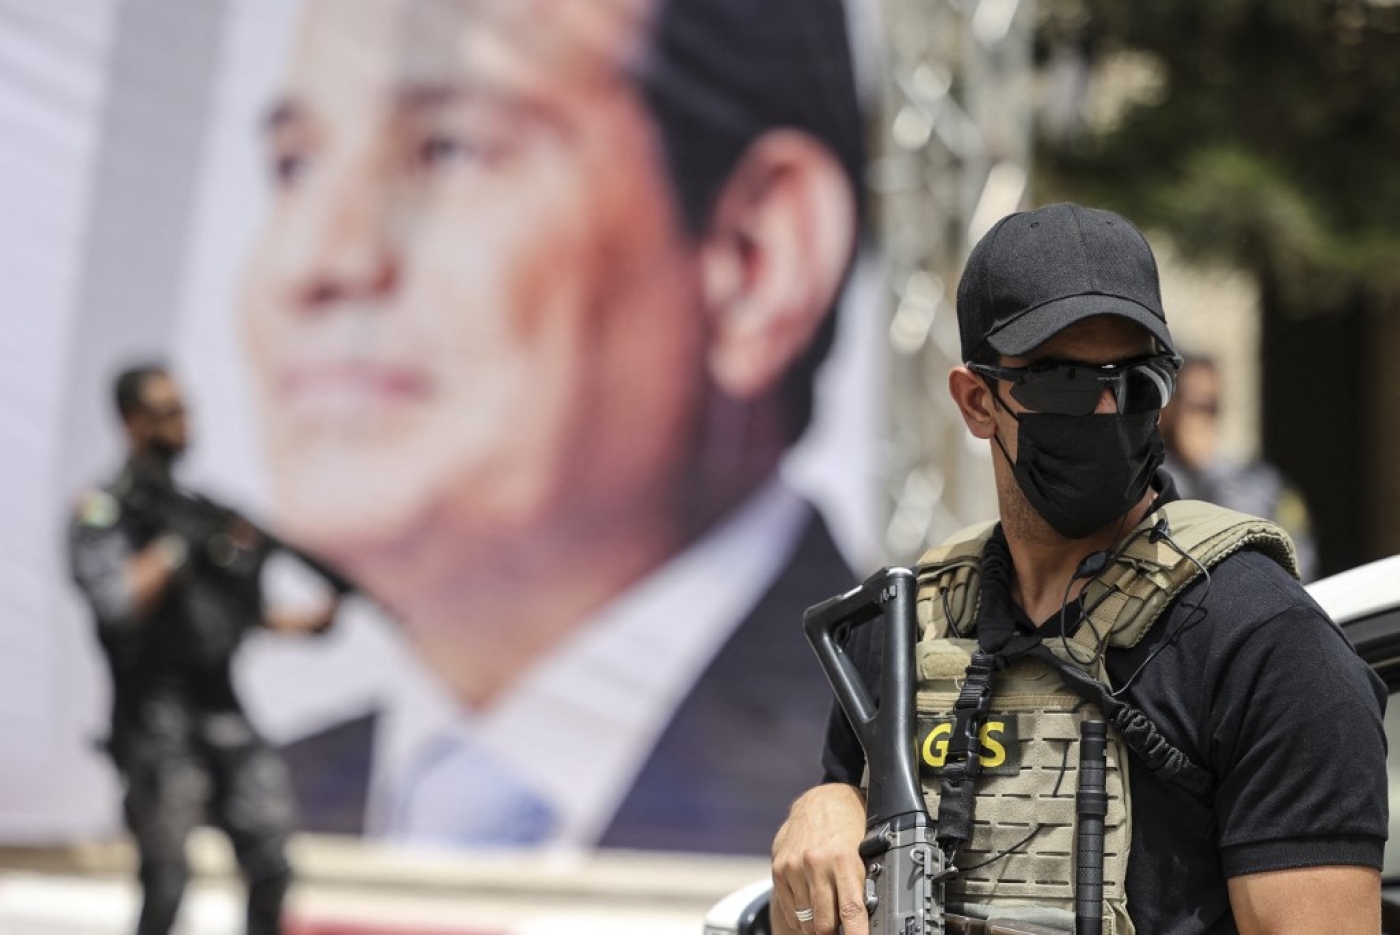 Des membres des forces égyptiennes montent la garde près d’une bannière représentant le président Abdel Fattah al-Sissi lors d’une rencontre entre le chef des services de renseignement égyptiens et des responsables du Hamas à Gaza, le 31 mai 2021 (AFP)